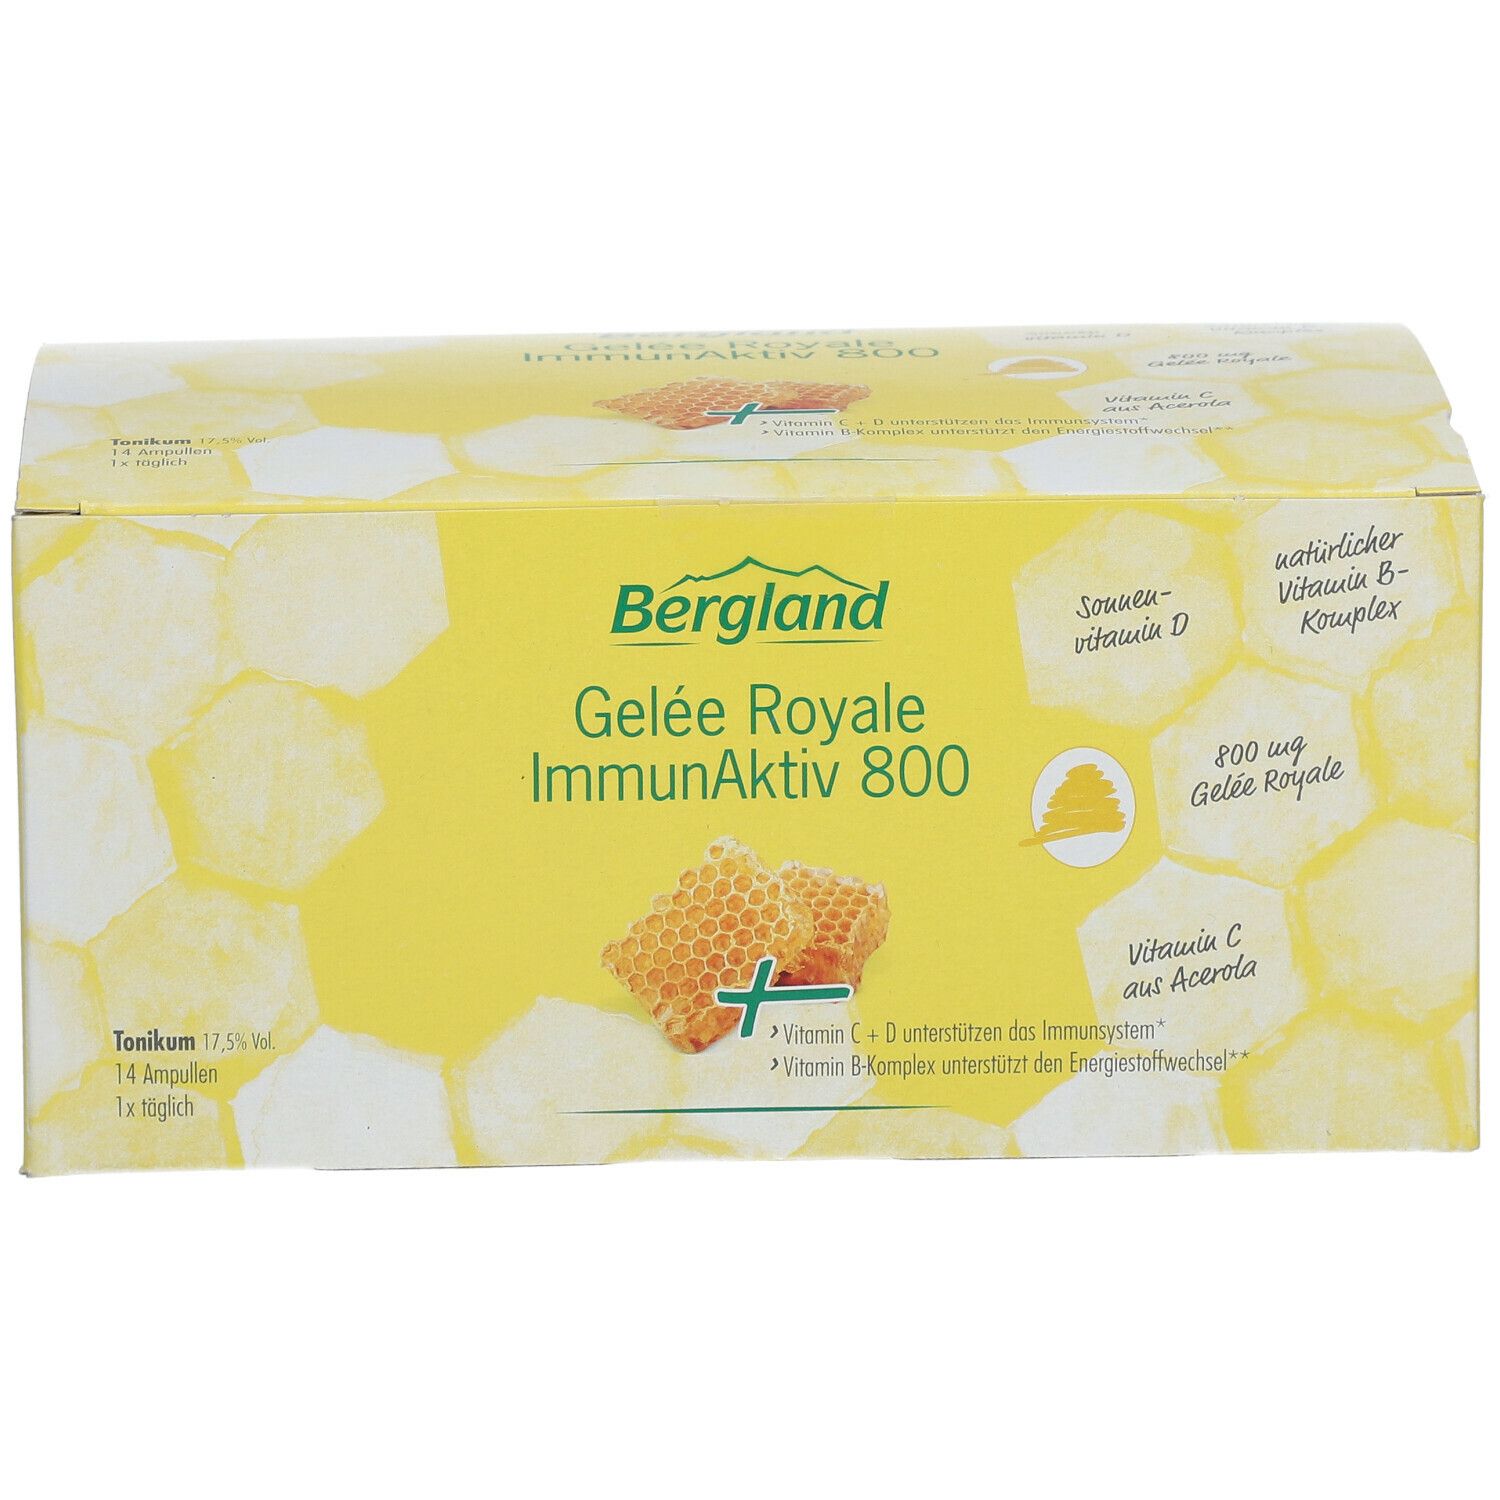 Bergland Gelée Royale ImmunAktiv 800